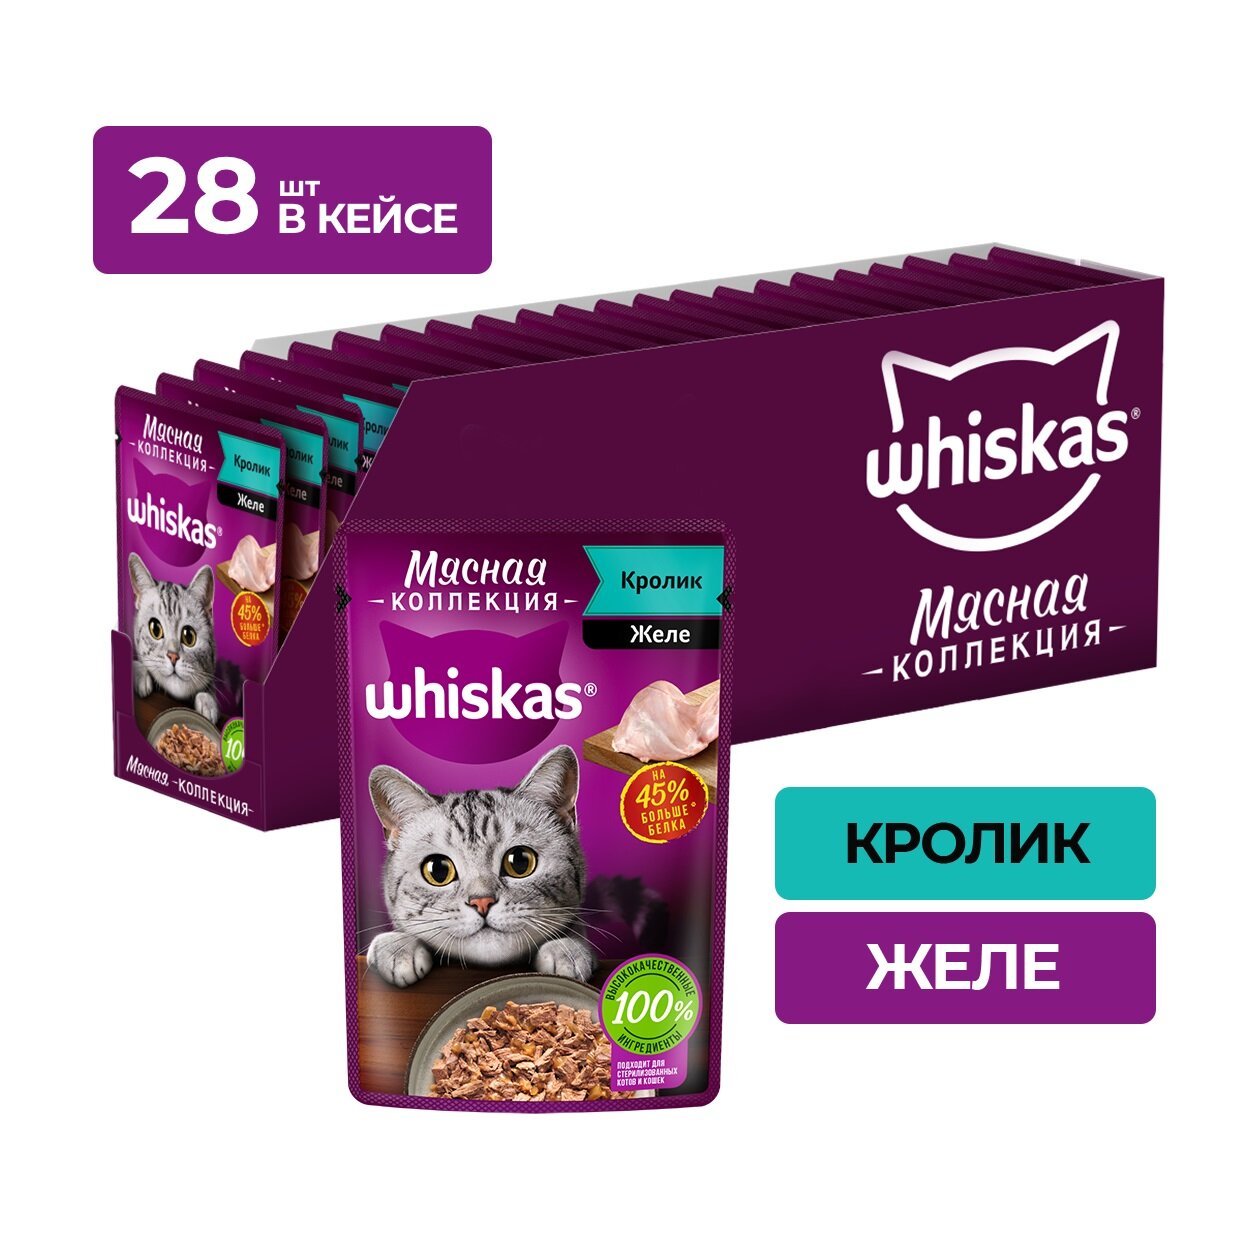 Whiskas Meaty пауч для кошек Кролик, 75 г. упаковка 28 шт